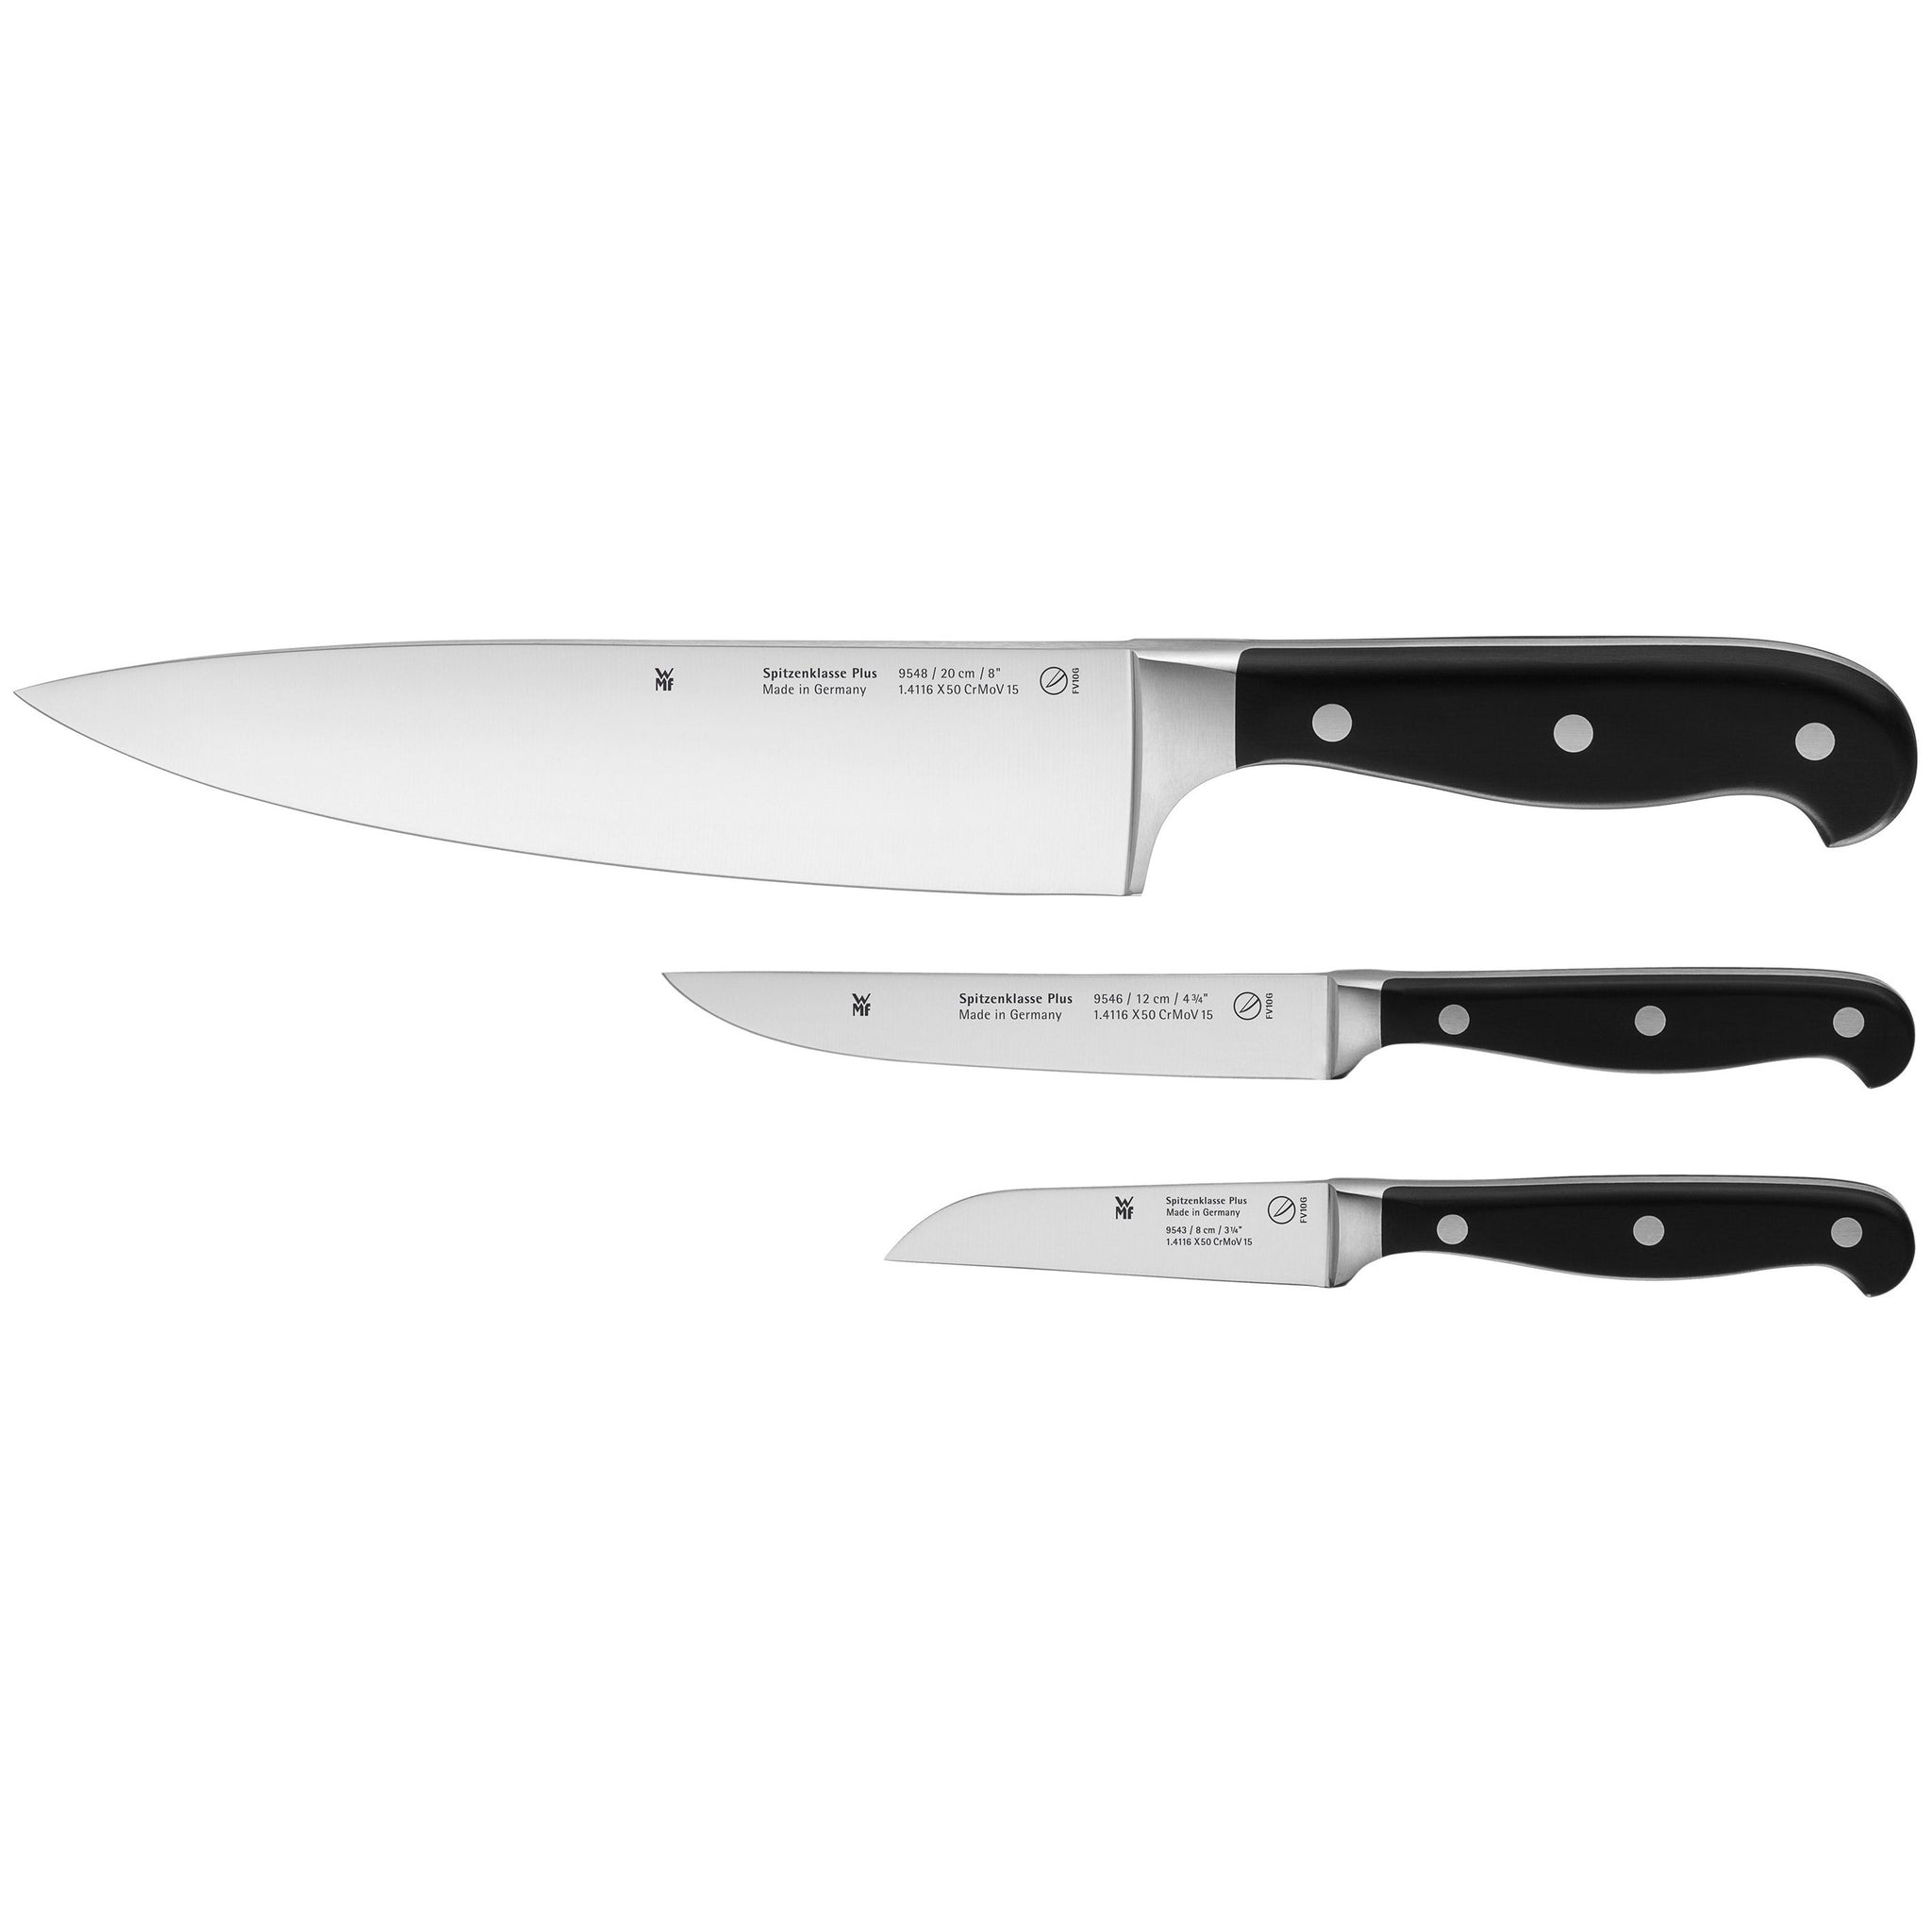 WMF Spitzenklasse Plus Knife Set 3pce